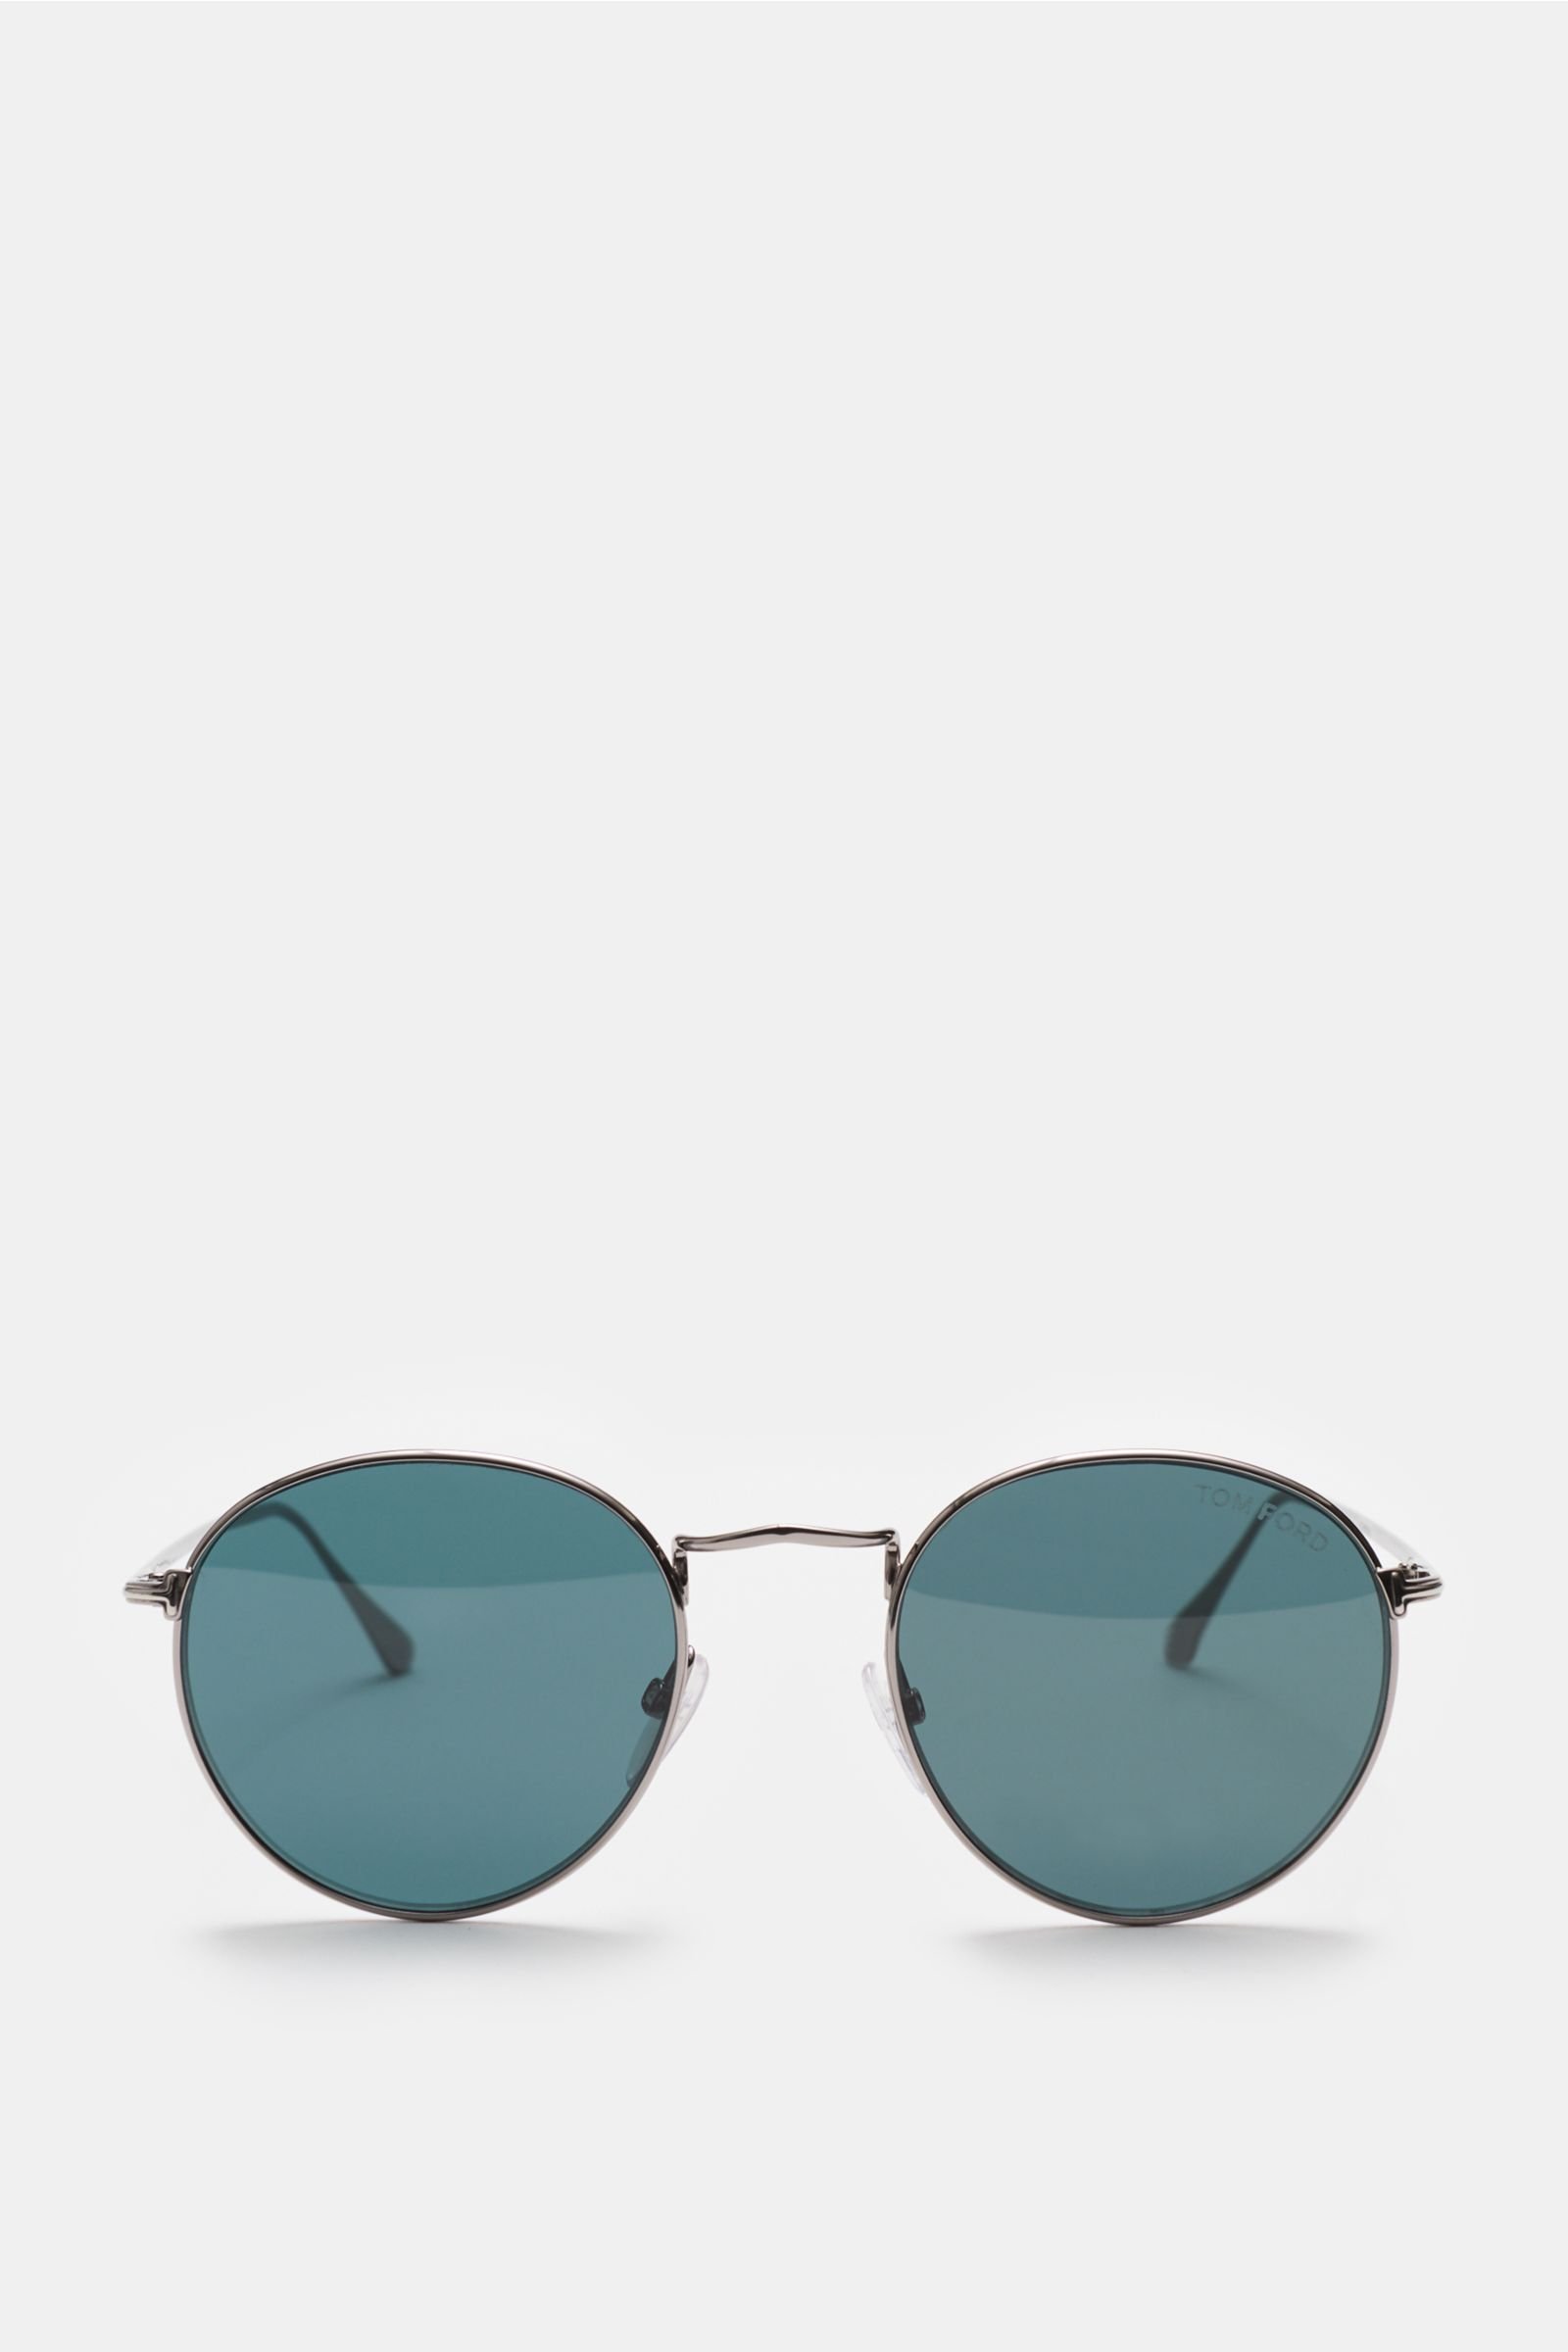 Sonnenbrille 'Ryan' silber/grün